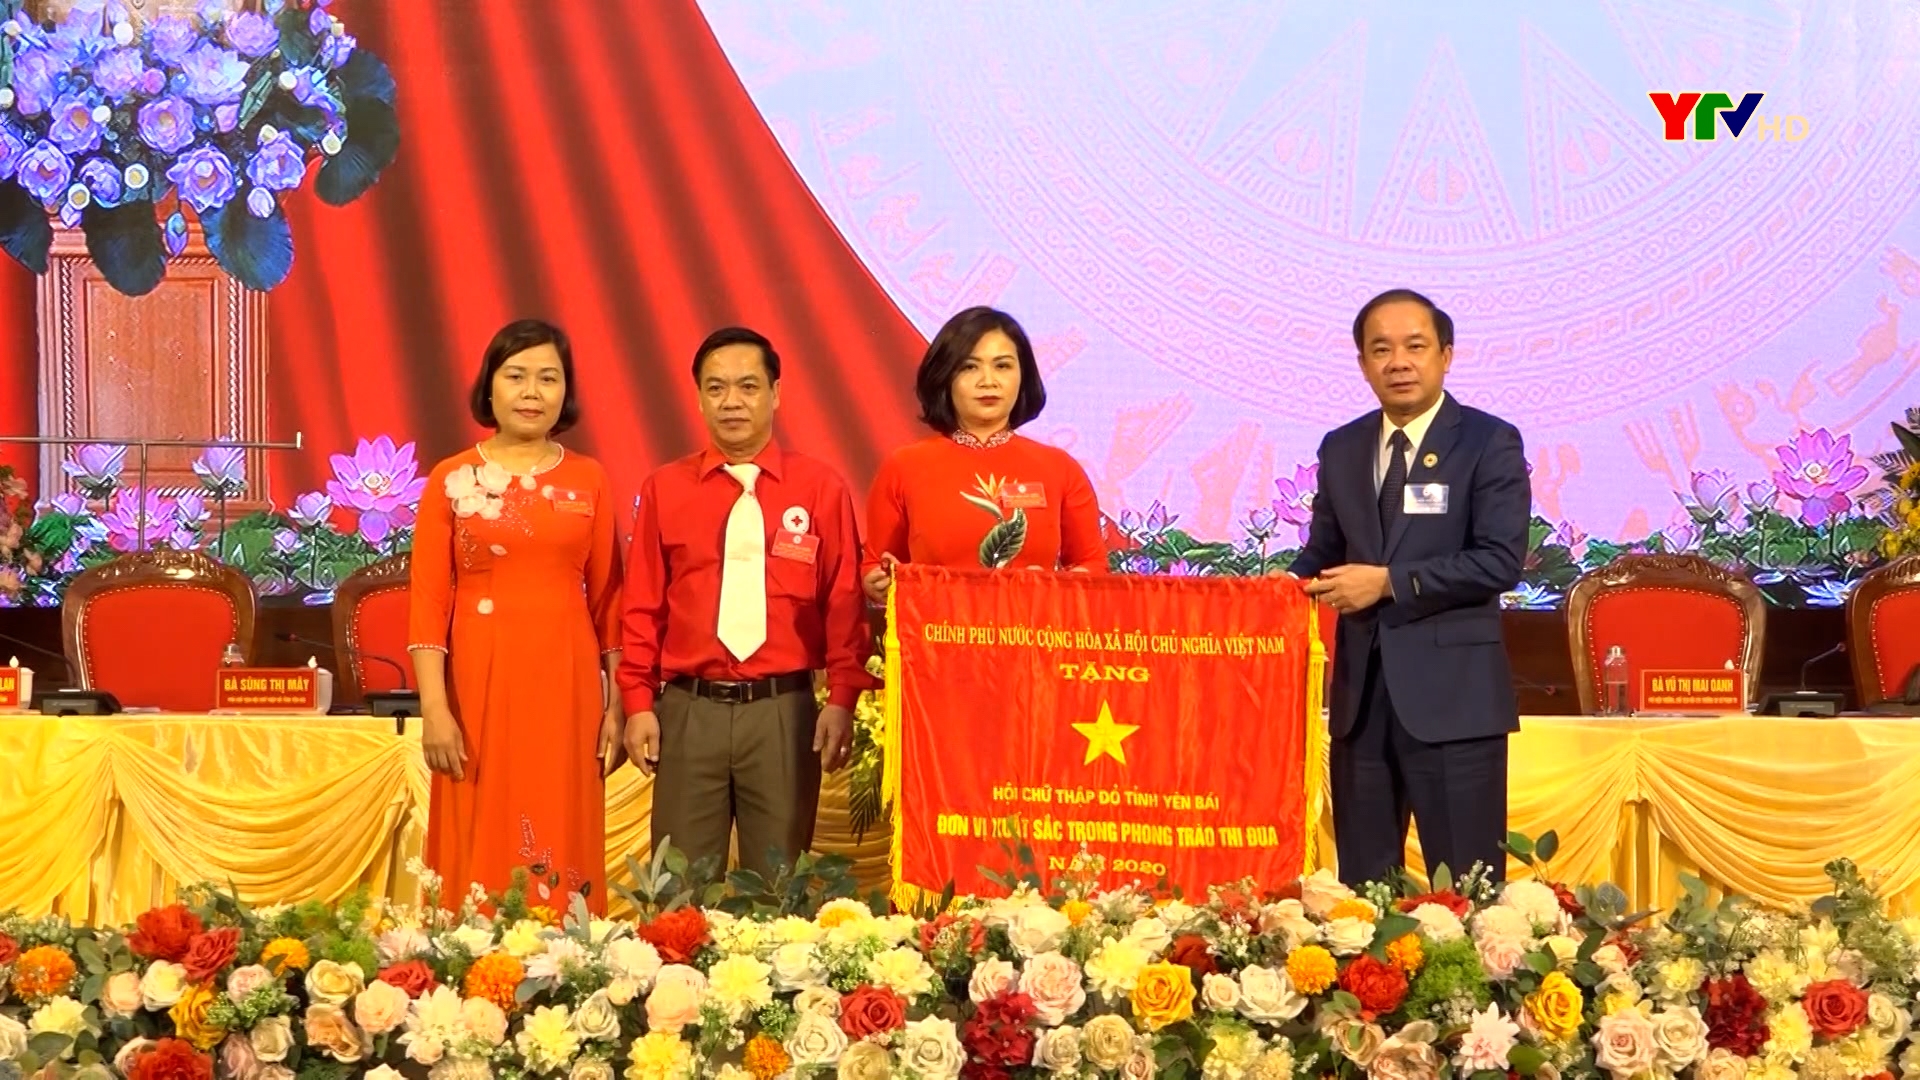 Đại hội đại biểu Hội Chữ thập đỏ tỉnh Yên Bái lần thứ VII thành công tốt đẹp